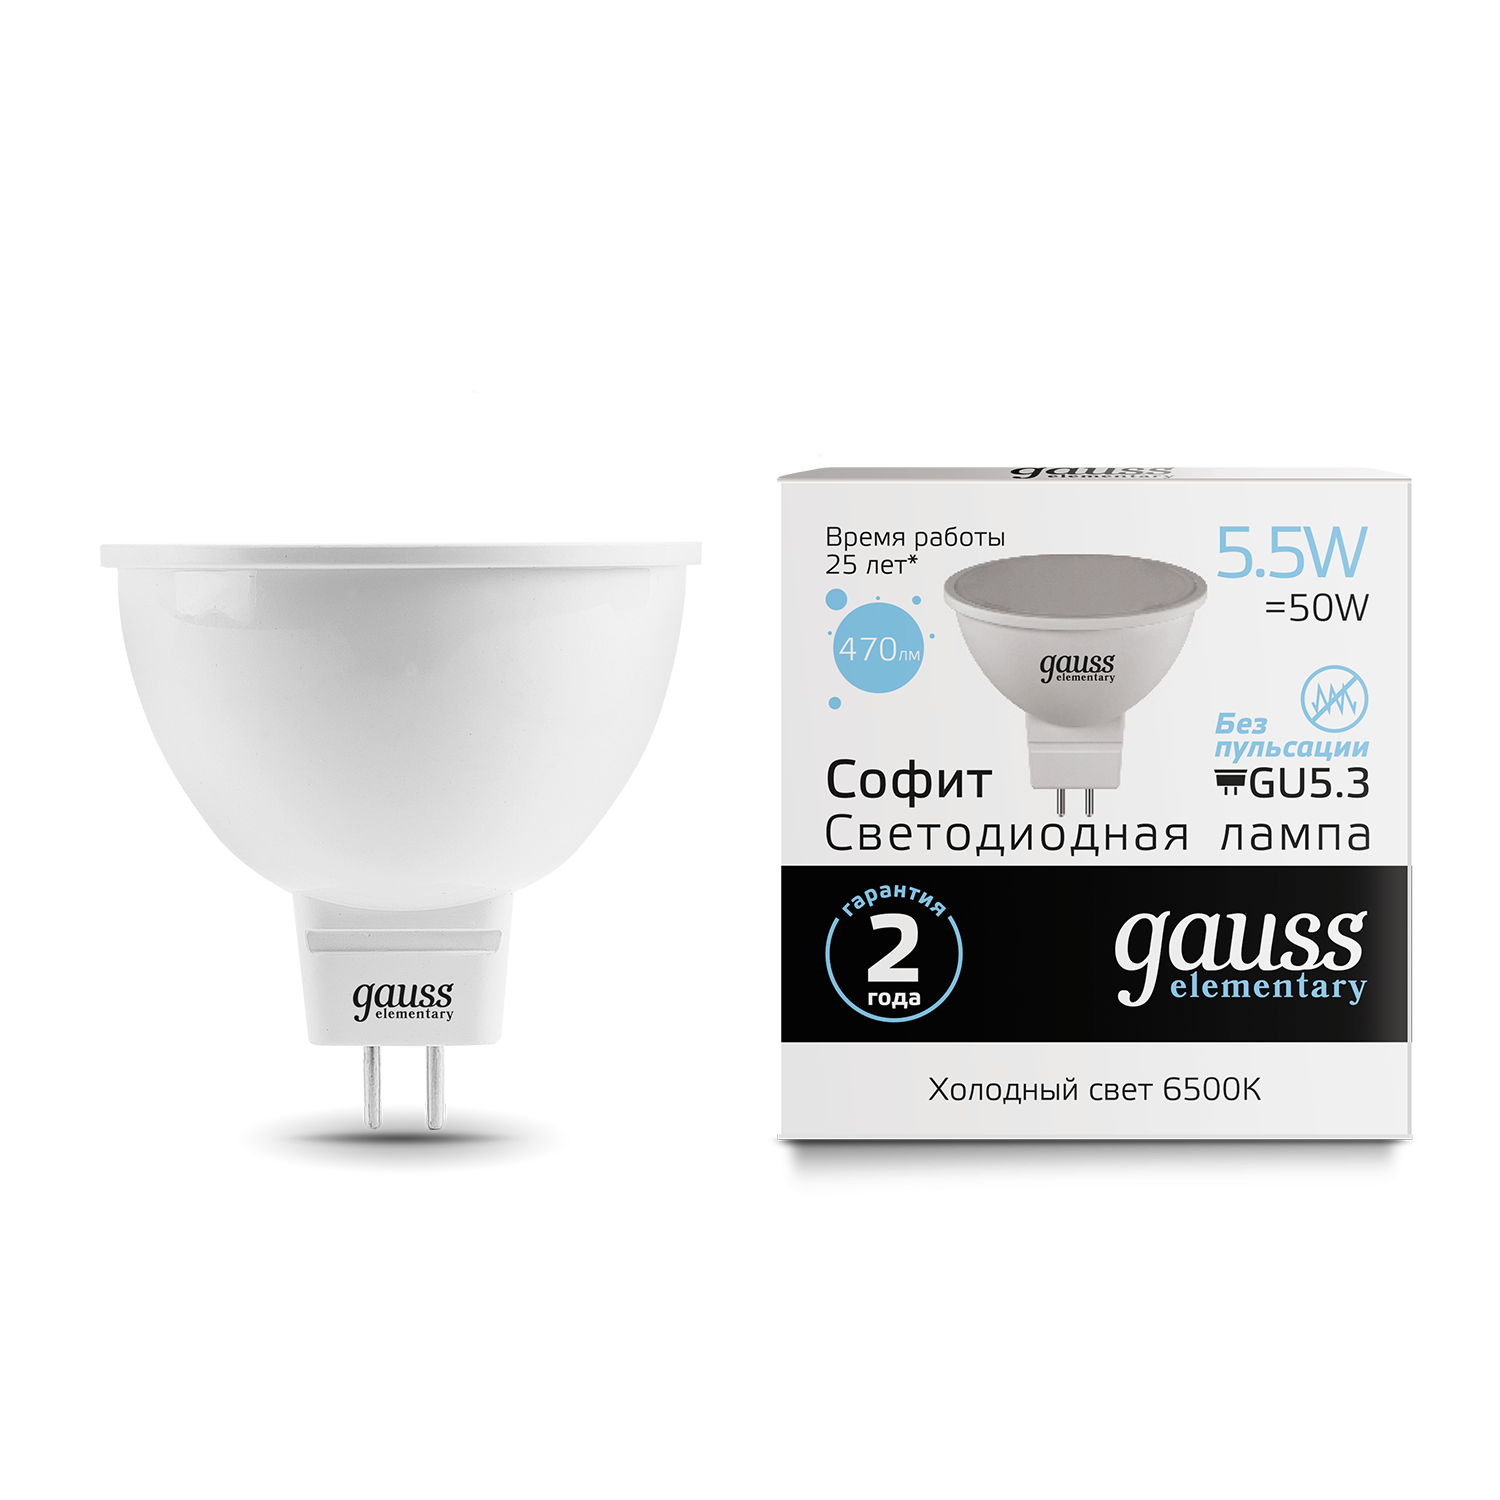 Светодиодная лампа Gauss Elementary 13536 MR16 GU5.3 5,5W, 6500K (холодный) CRI>80 180-240V, гарантия 2 года - фото 1